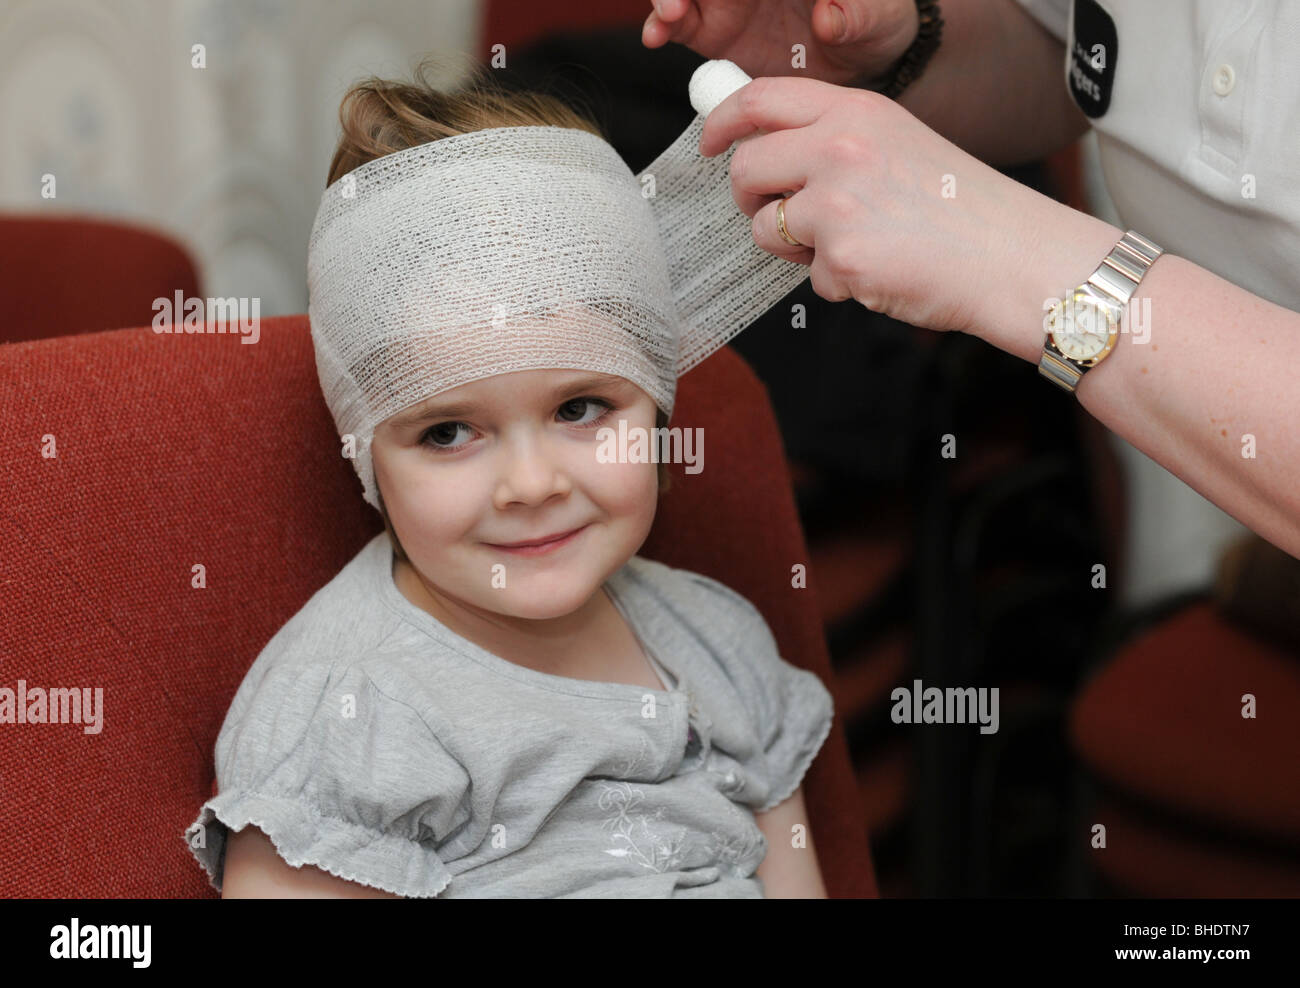 Les premiers soins effectués sur une petite fille qui a nui à sa tête dans un accident de jeu et sa tête est bandée Banque D'Images